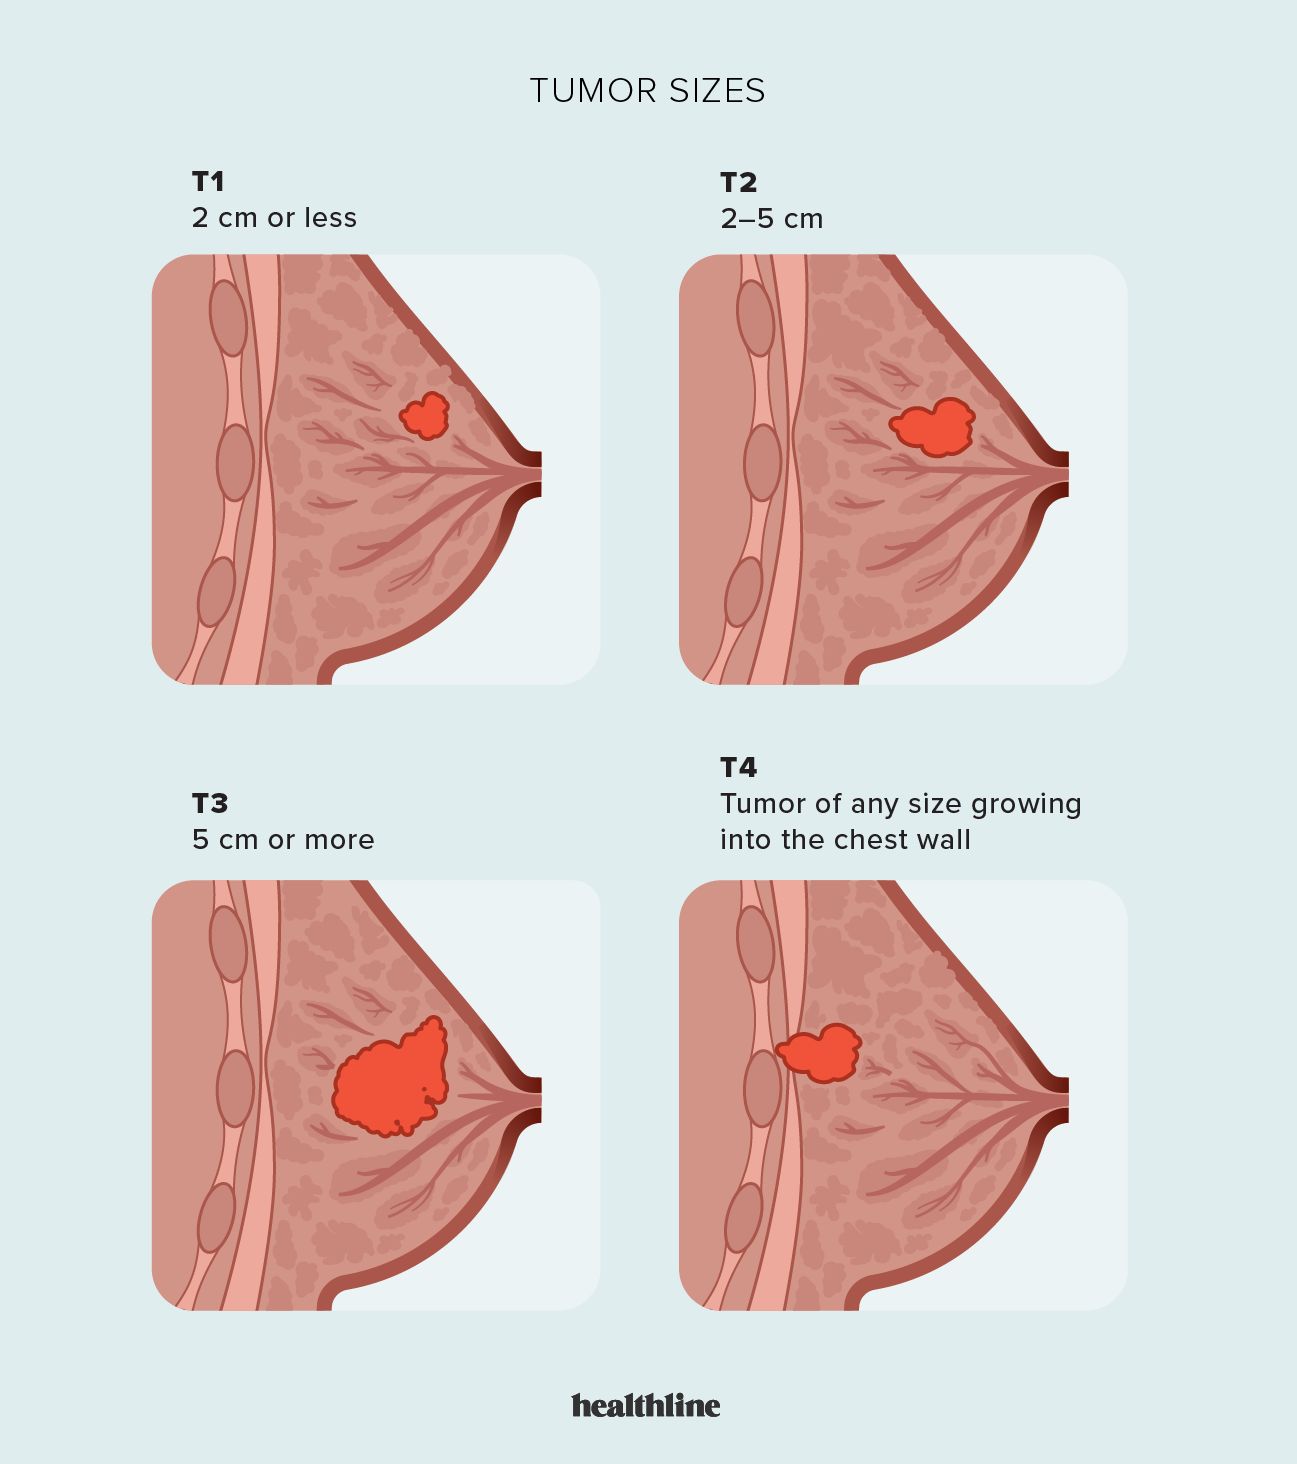 Understanding Under-Breast Soreness